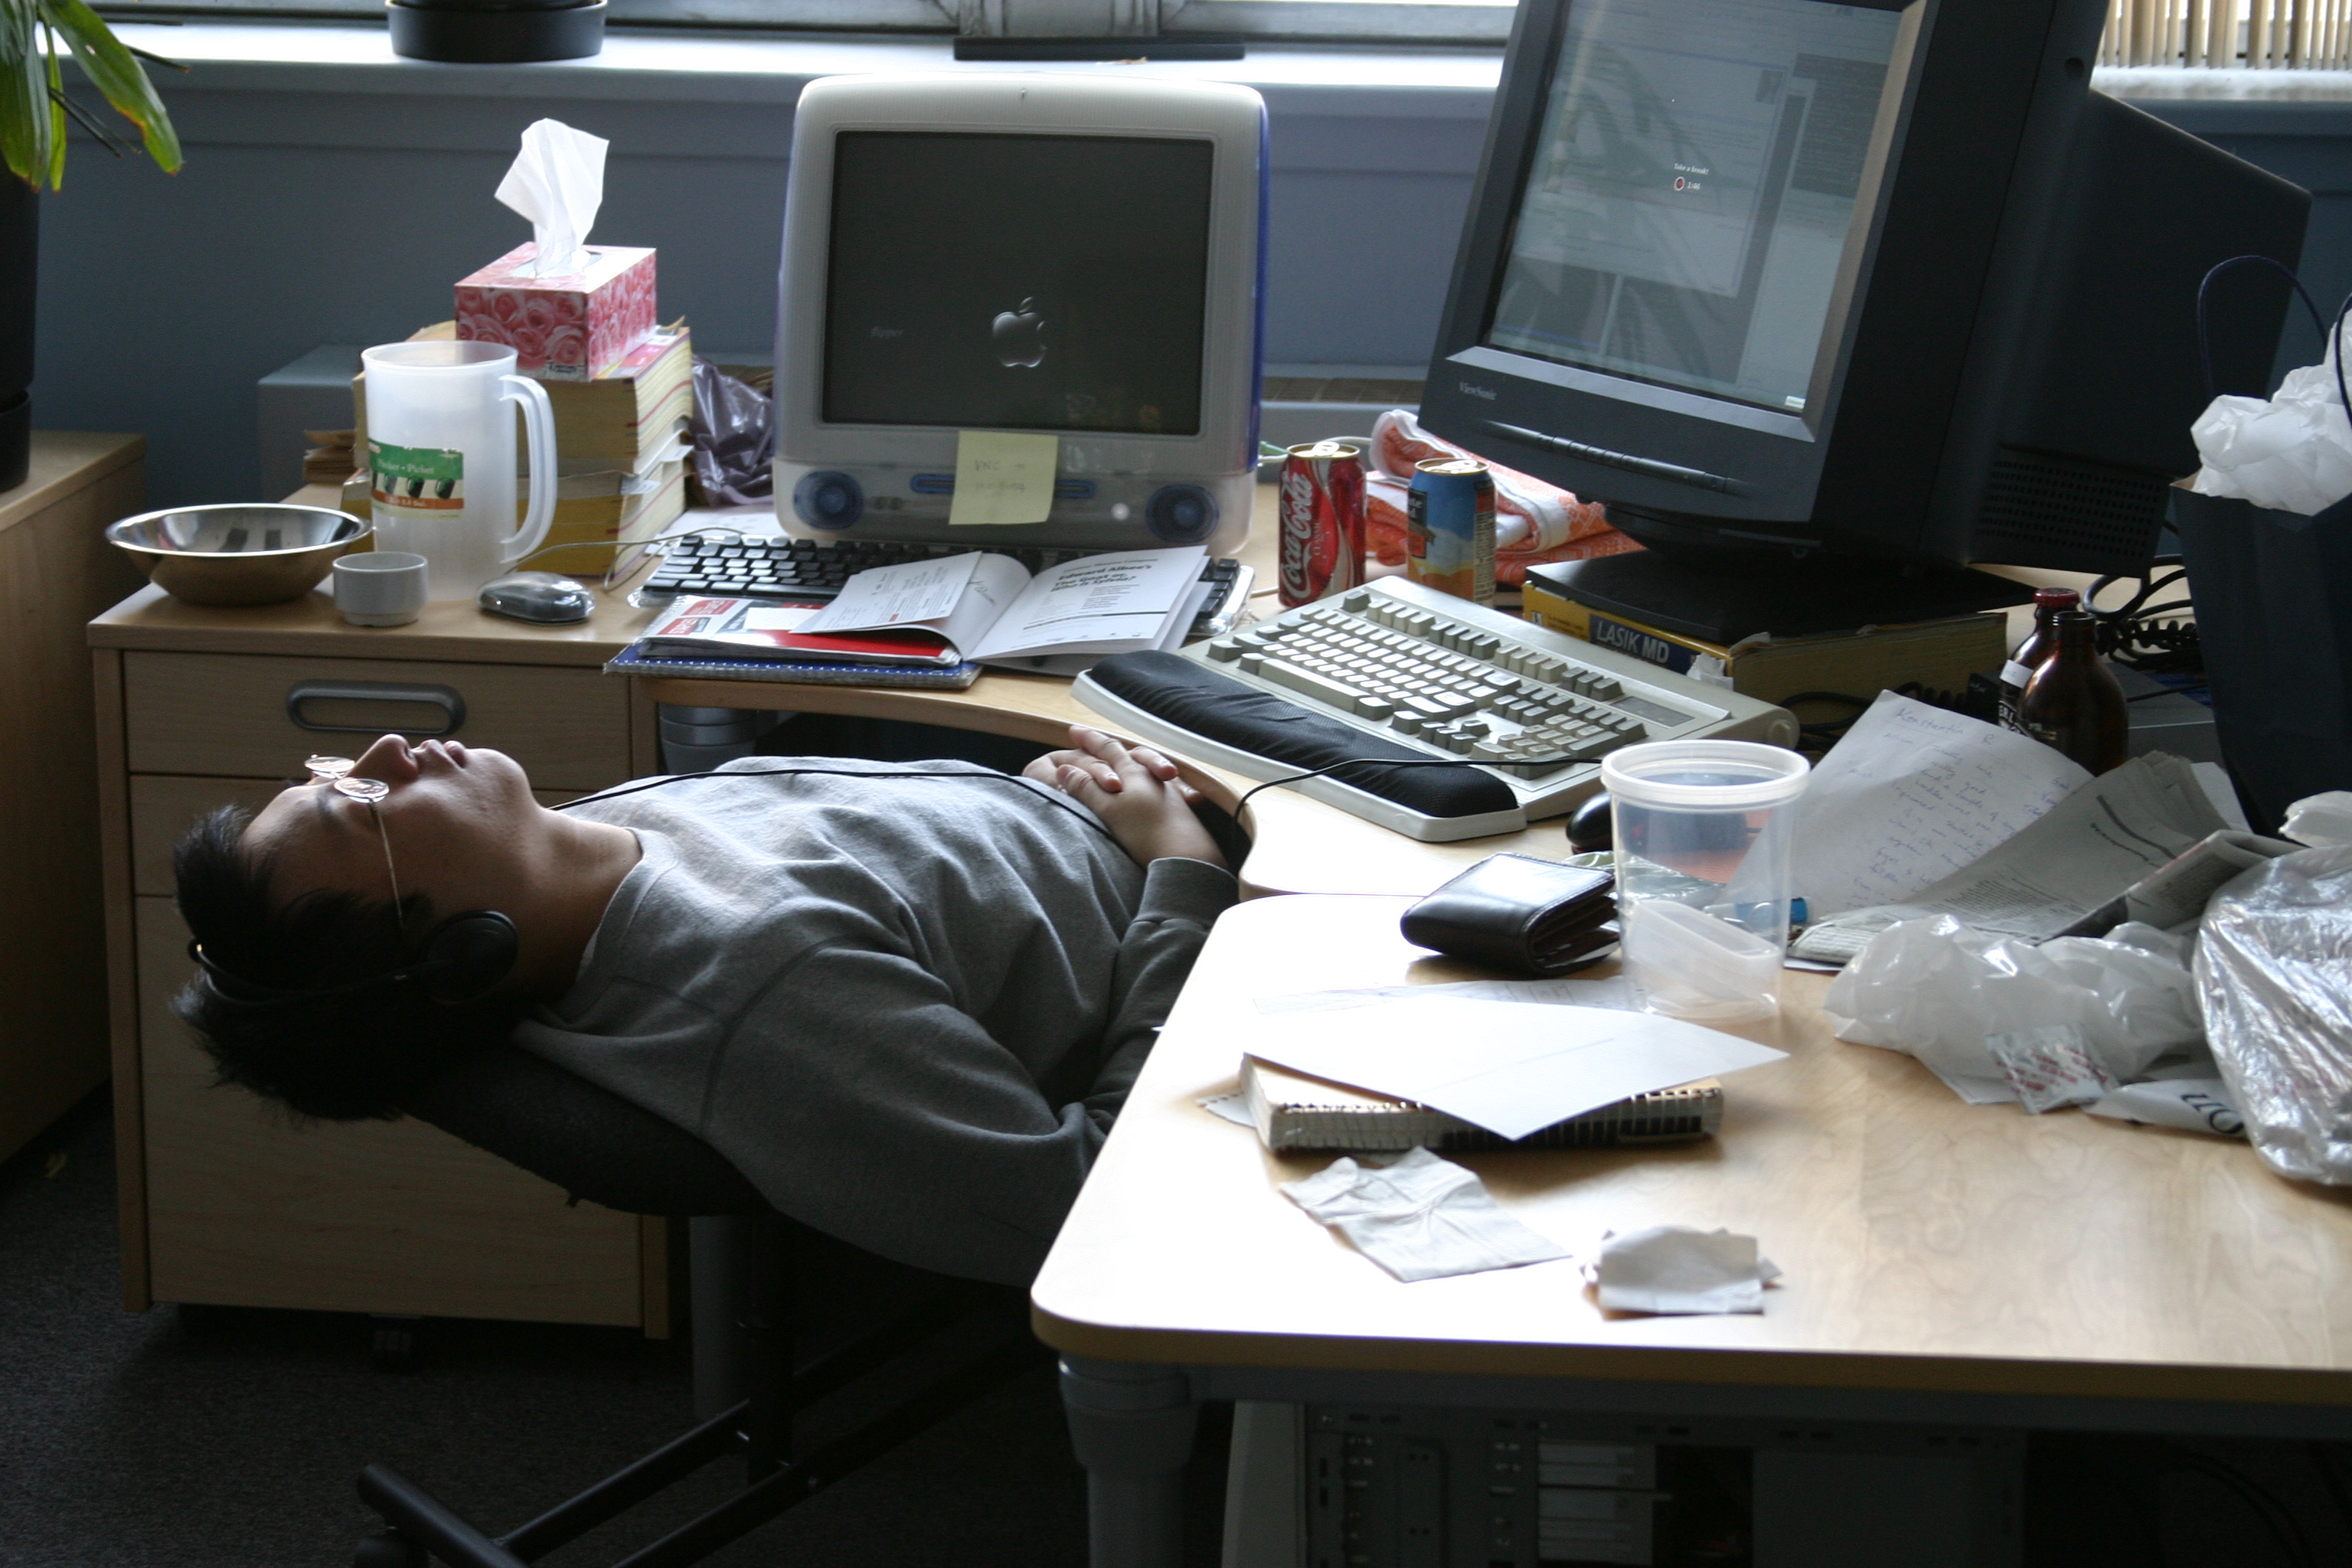 sleepy office worker